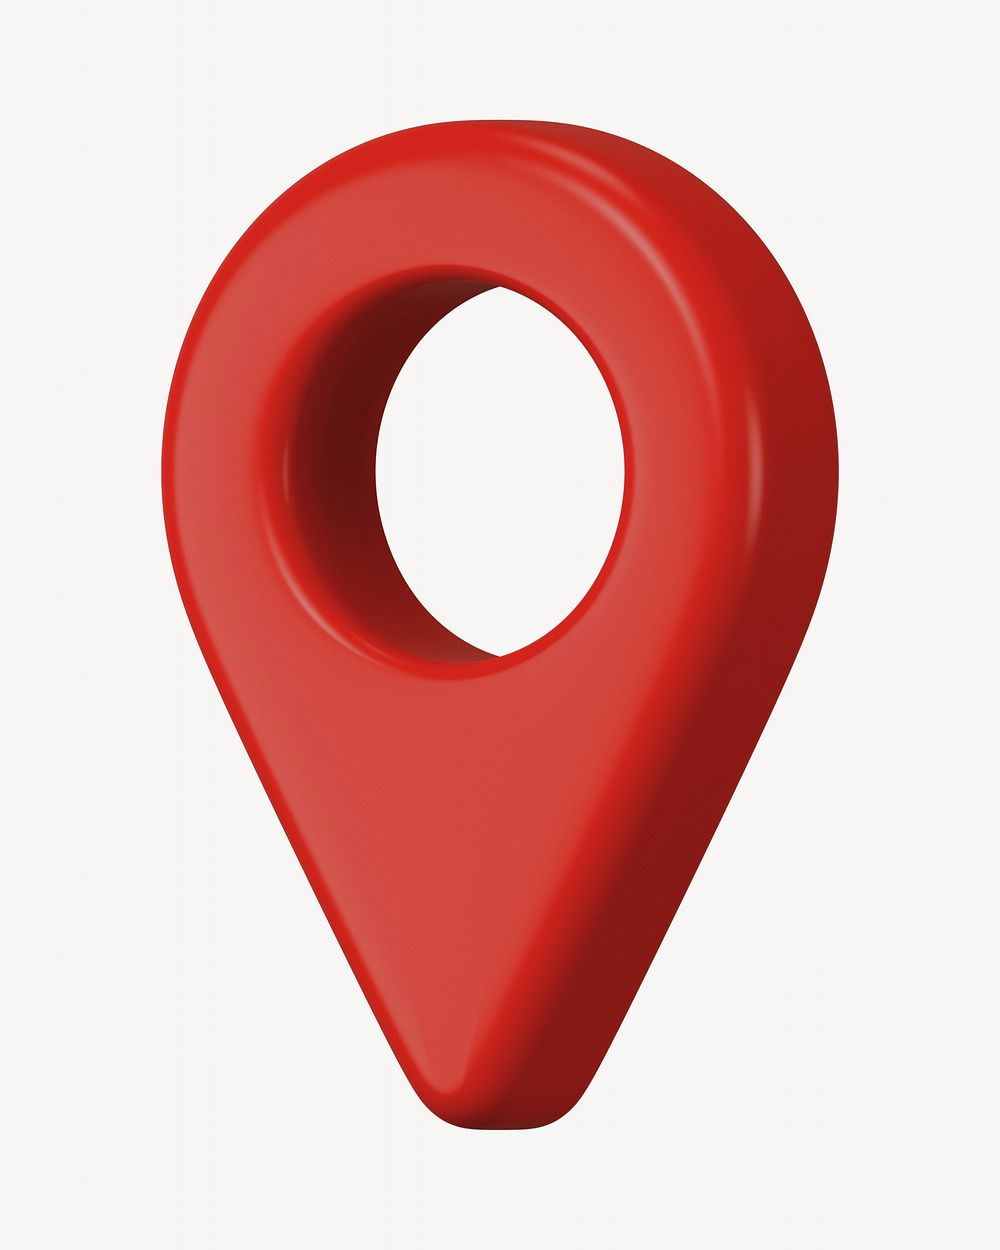 Current location symbol red